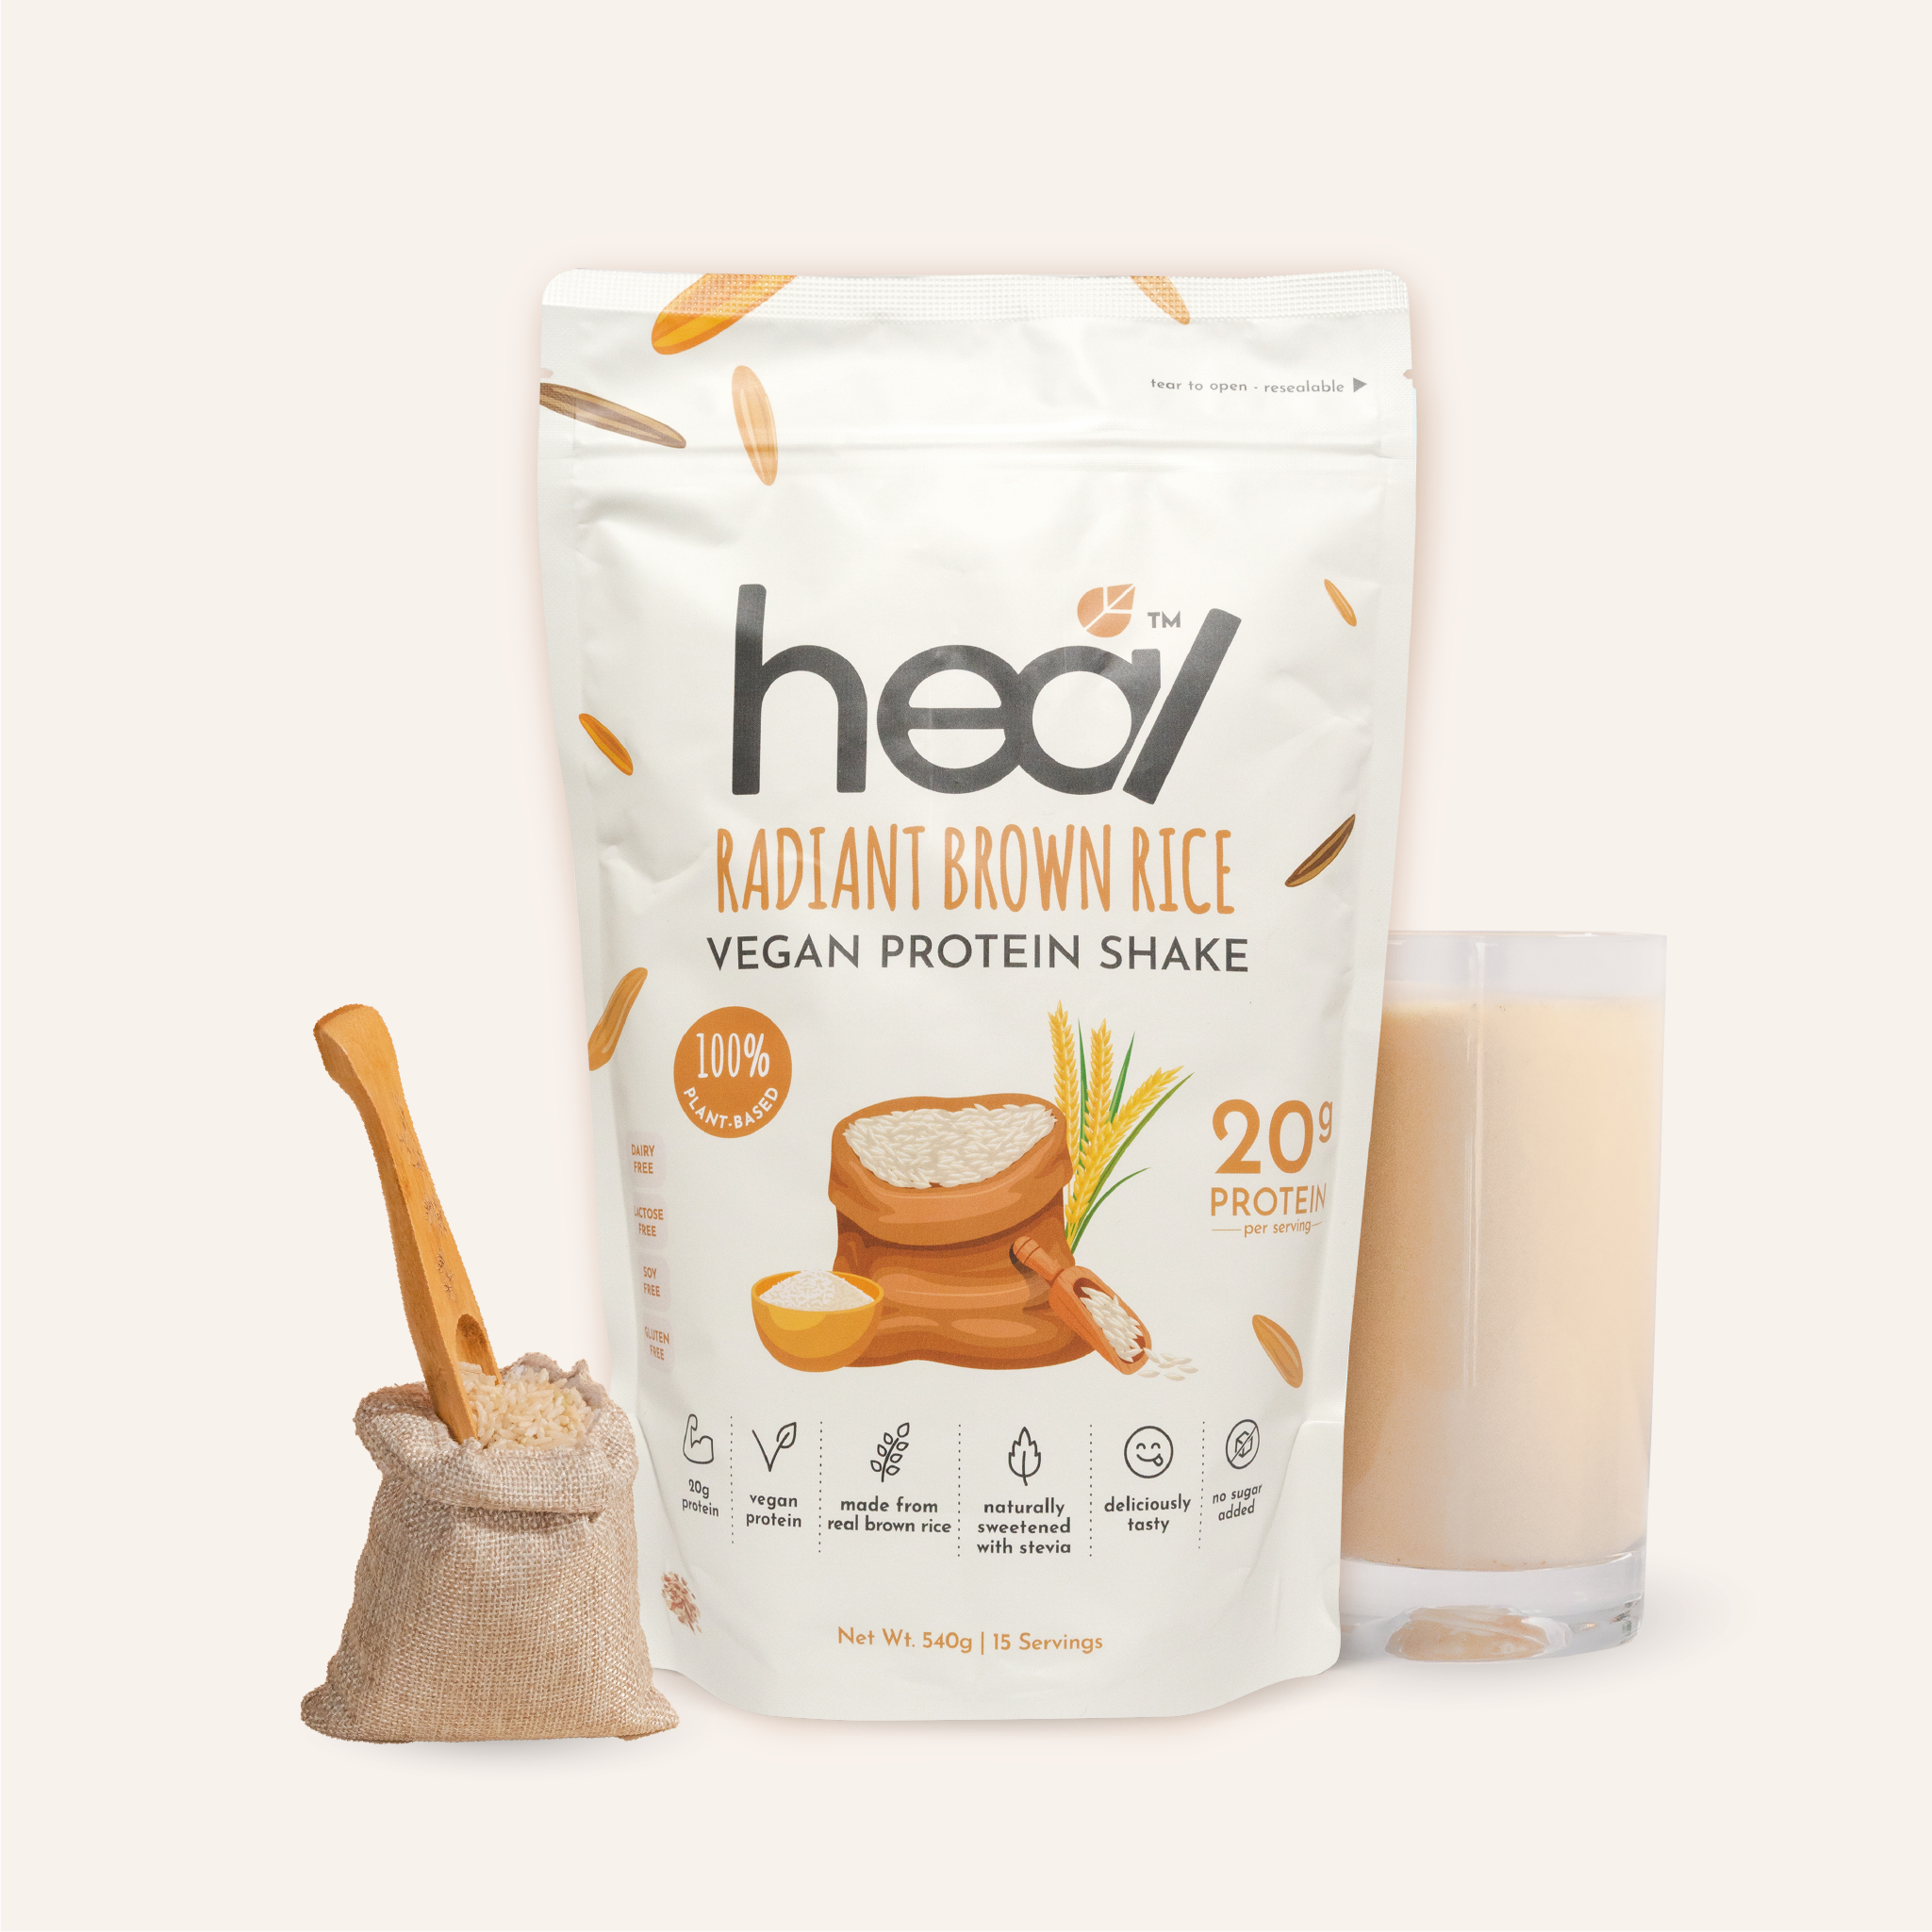 Heal Radiant Brown Rice Vegan Protein Shake, 15 Servings Value Pack